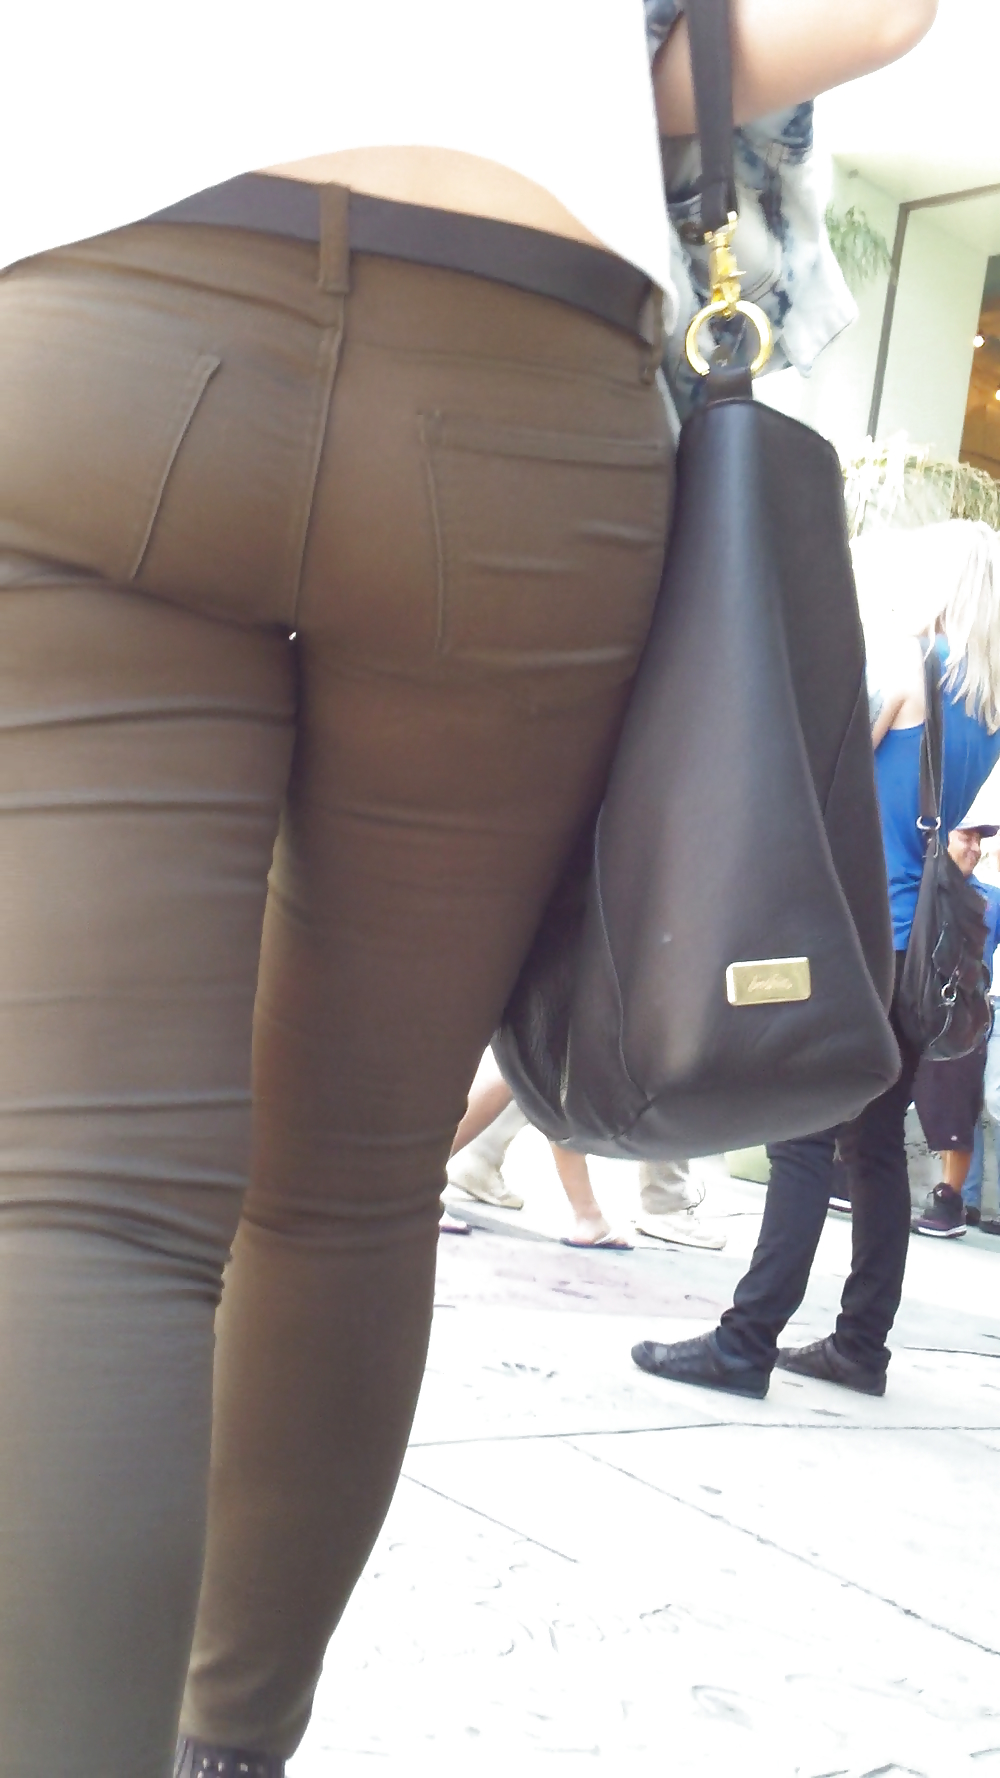 Spanish teen bubble butt & ass in pants #21202221